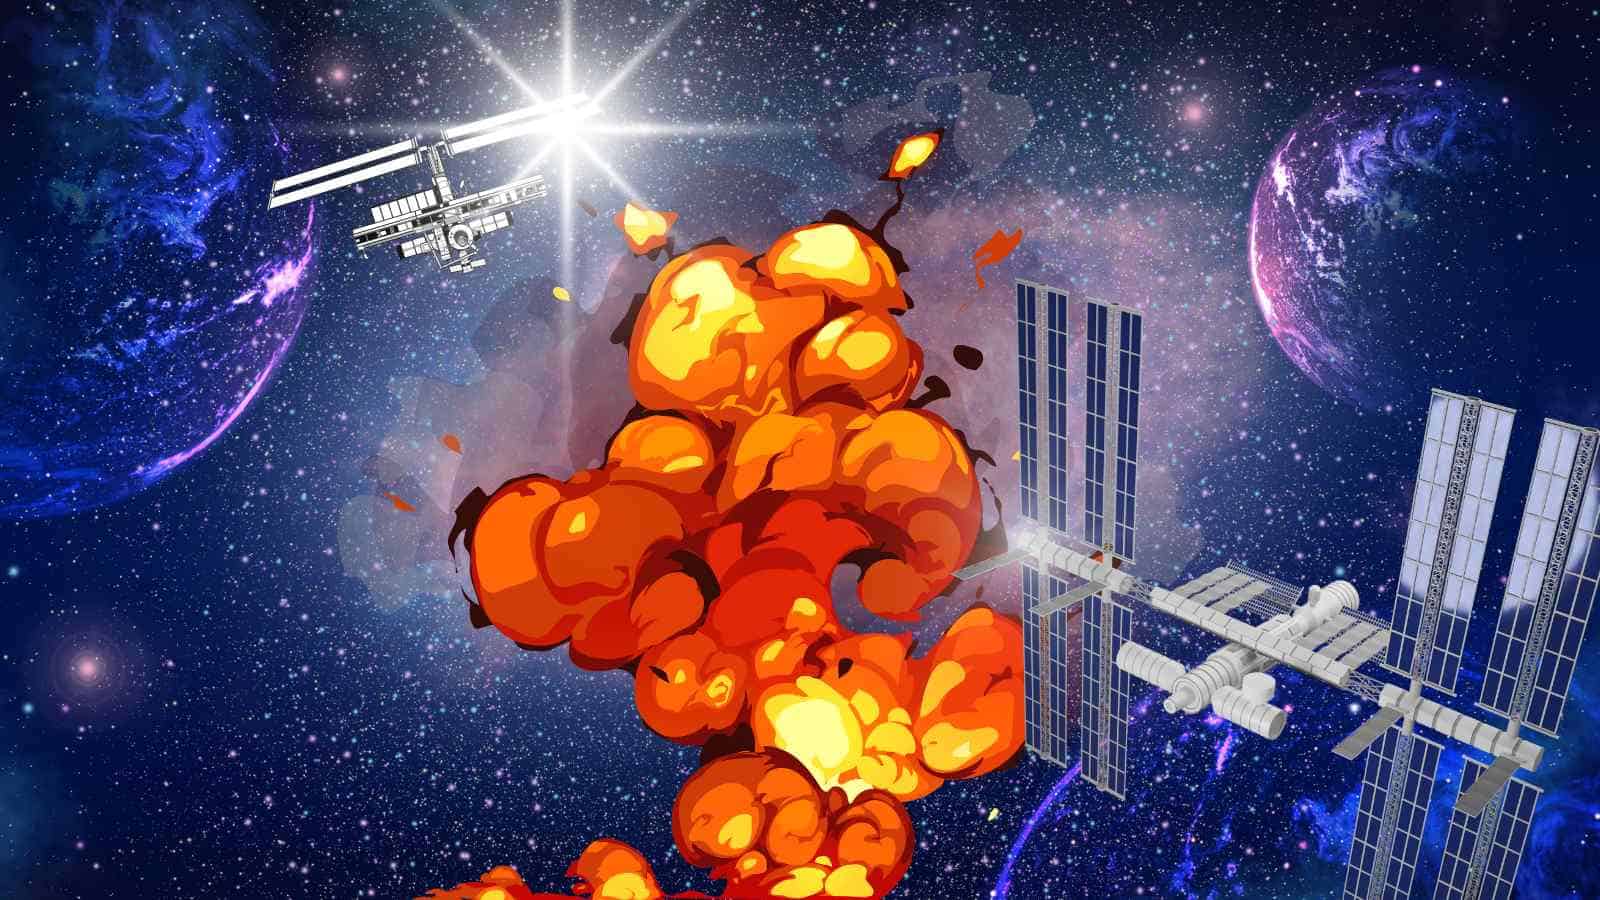 L'esplosione di una stella causerebbe problematiche potenzialmente molto gravi